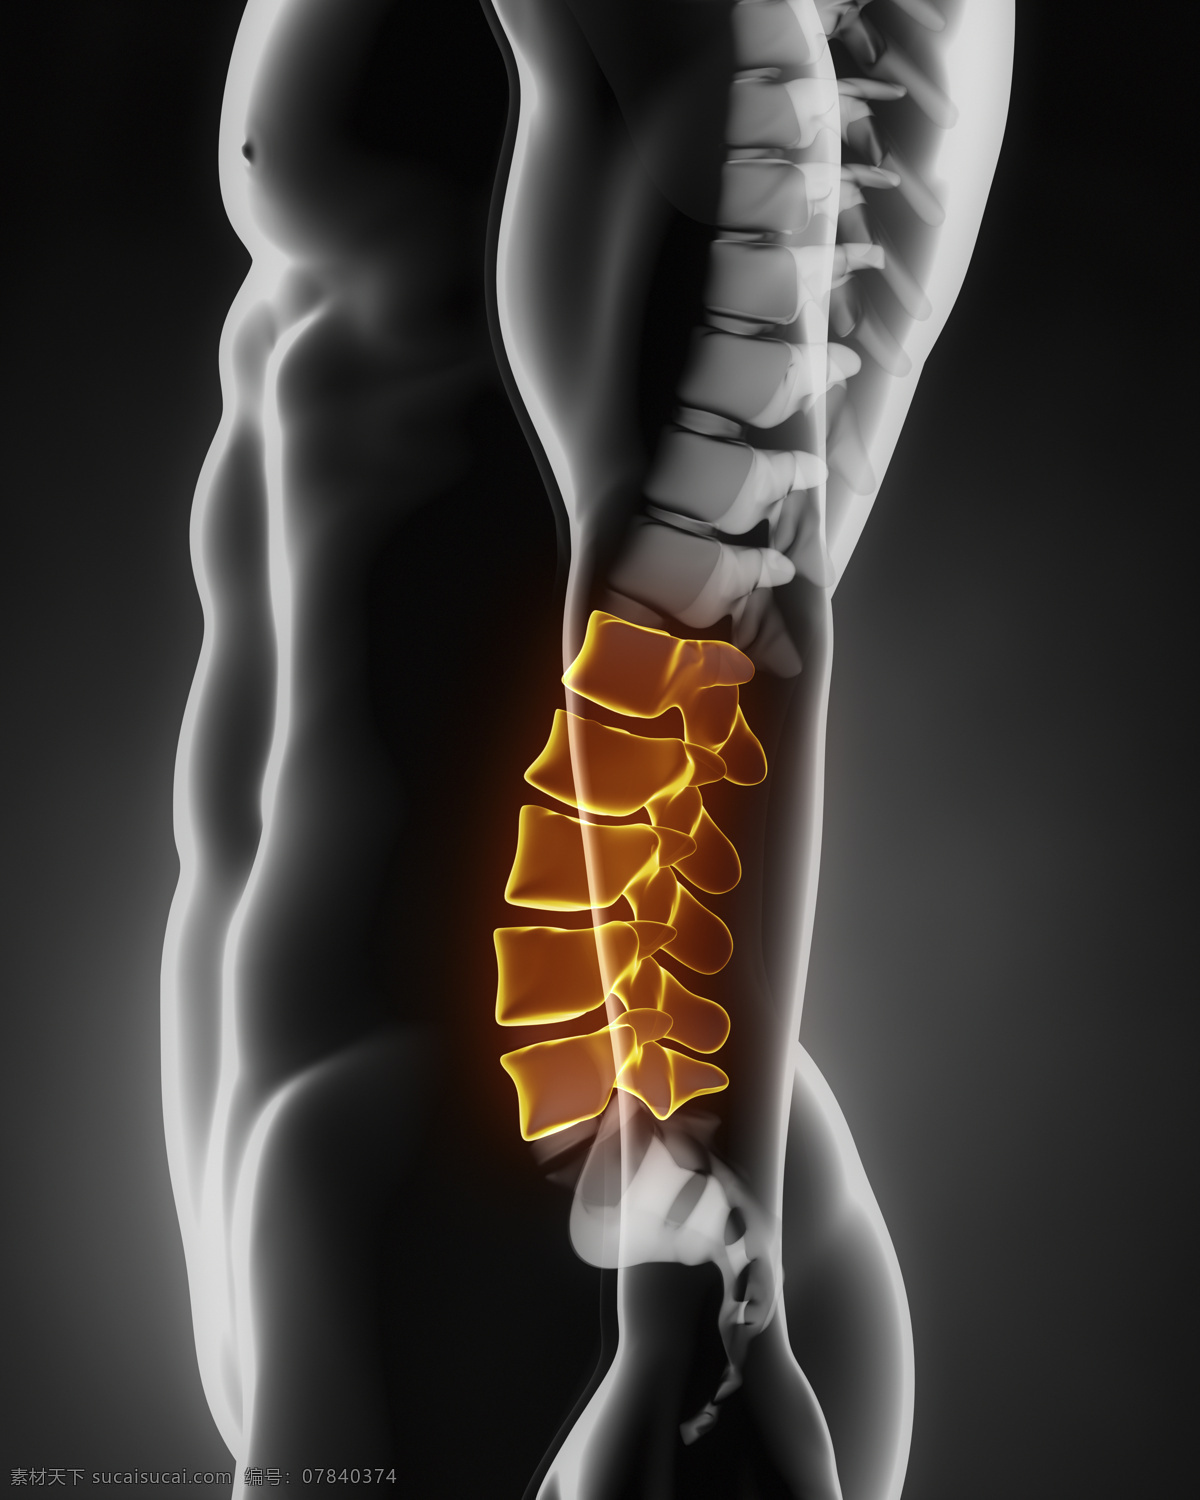 男性 人体 骨骼 脊髓 脊椎 人体器官 医疗科学 医学 人体器官图 人物图片